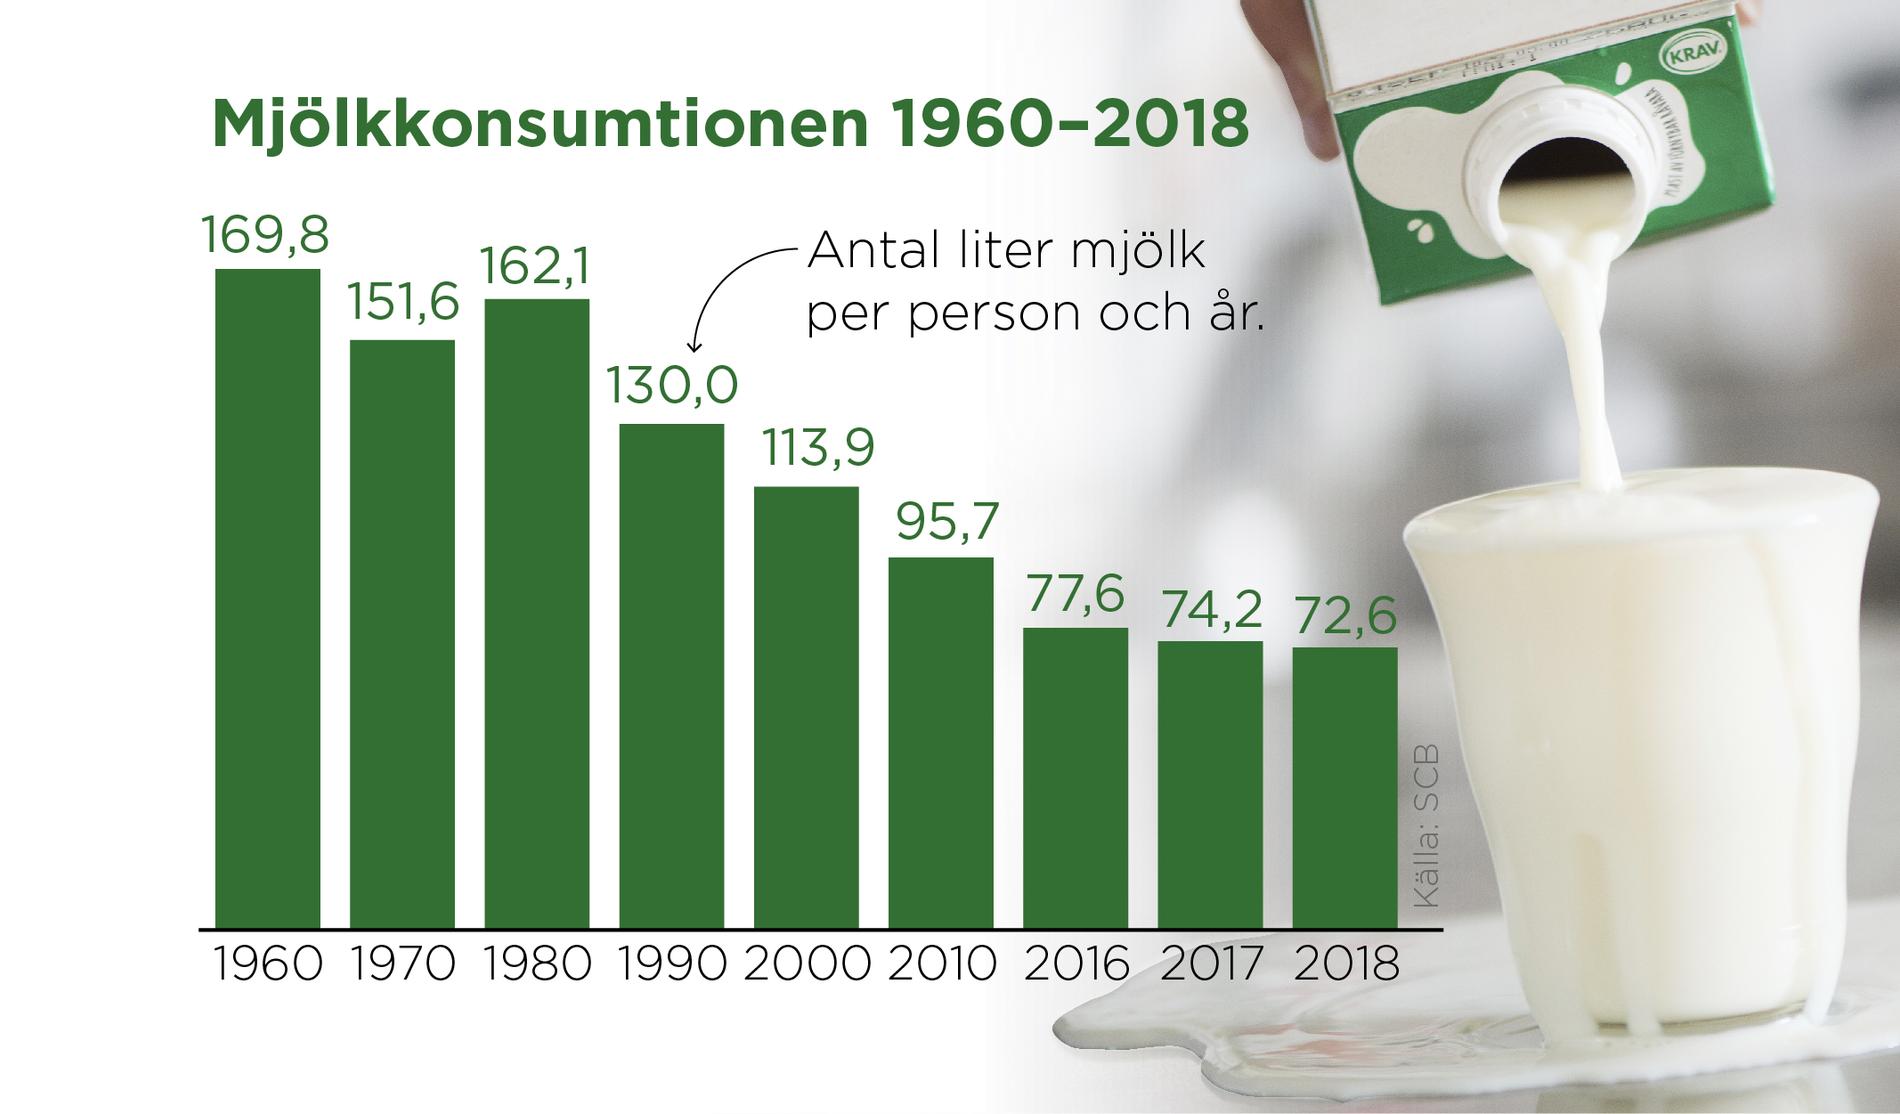 Mjölkkonsumtionen per invånare har minskat de senaste årtiondena.